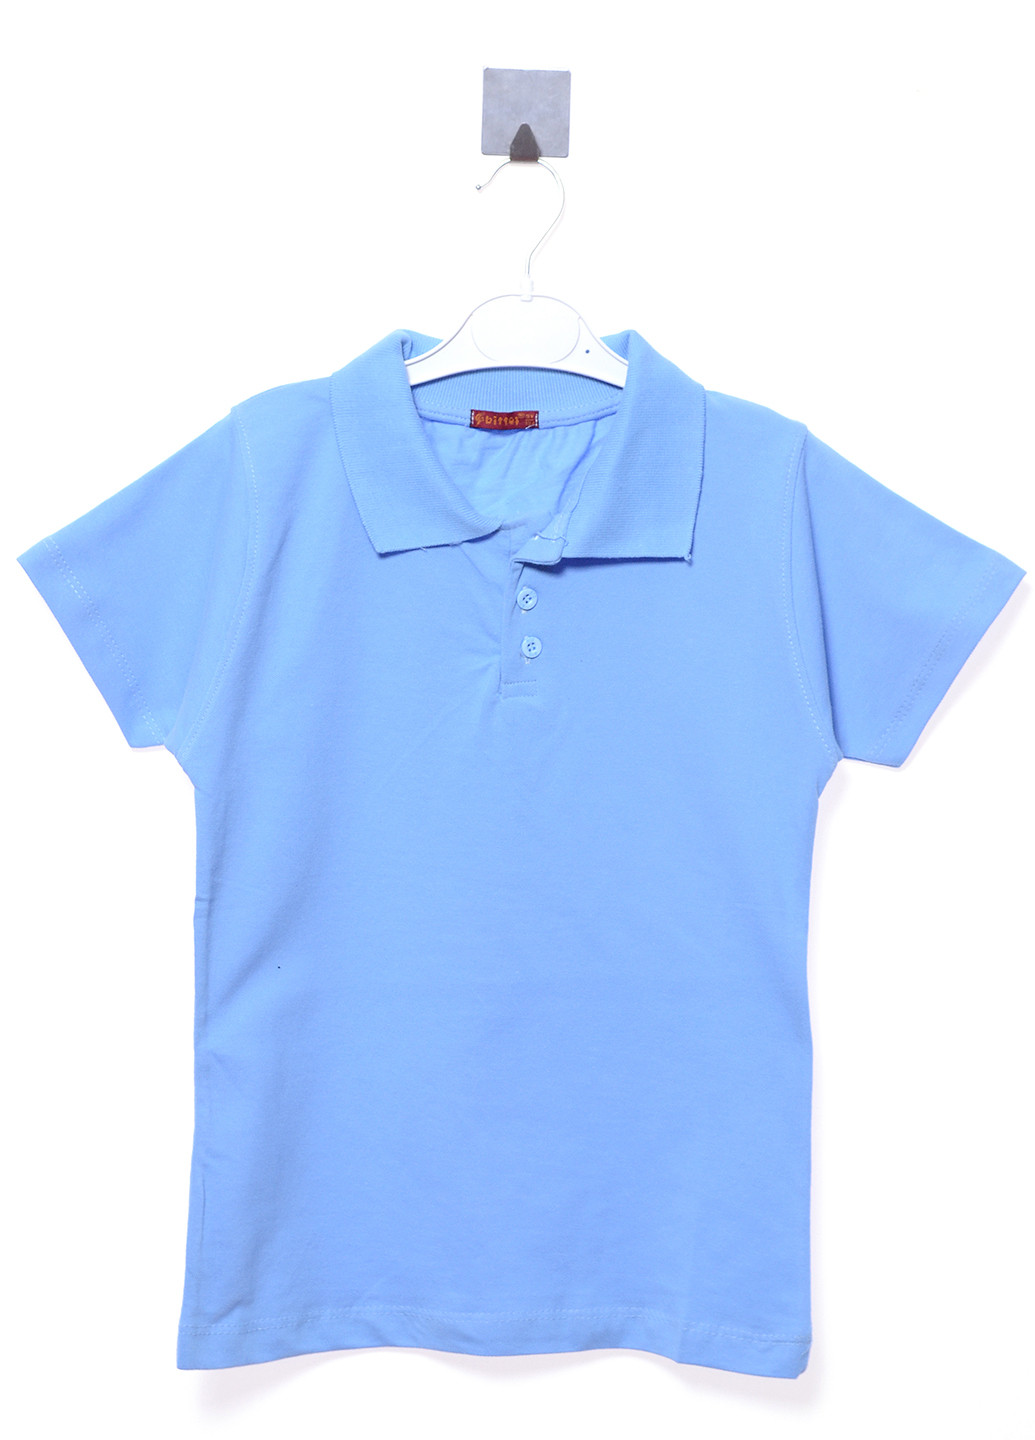 Голубой детская футболка-поло для мальчика Bittos однотонная